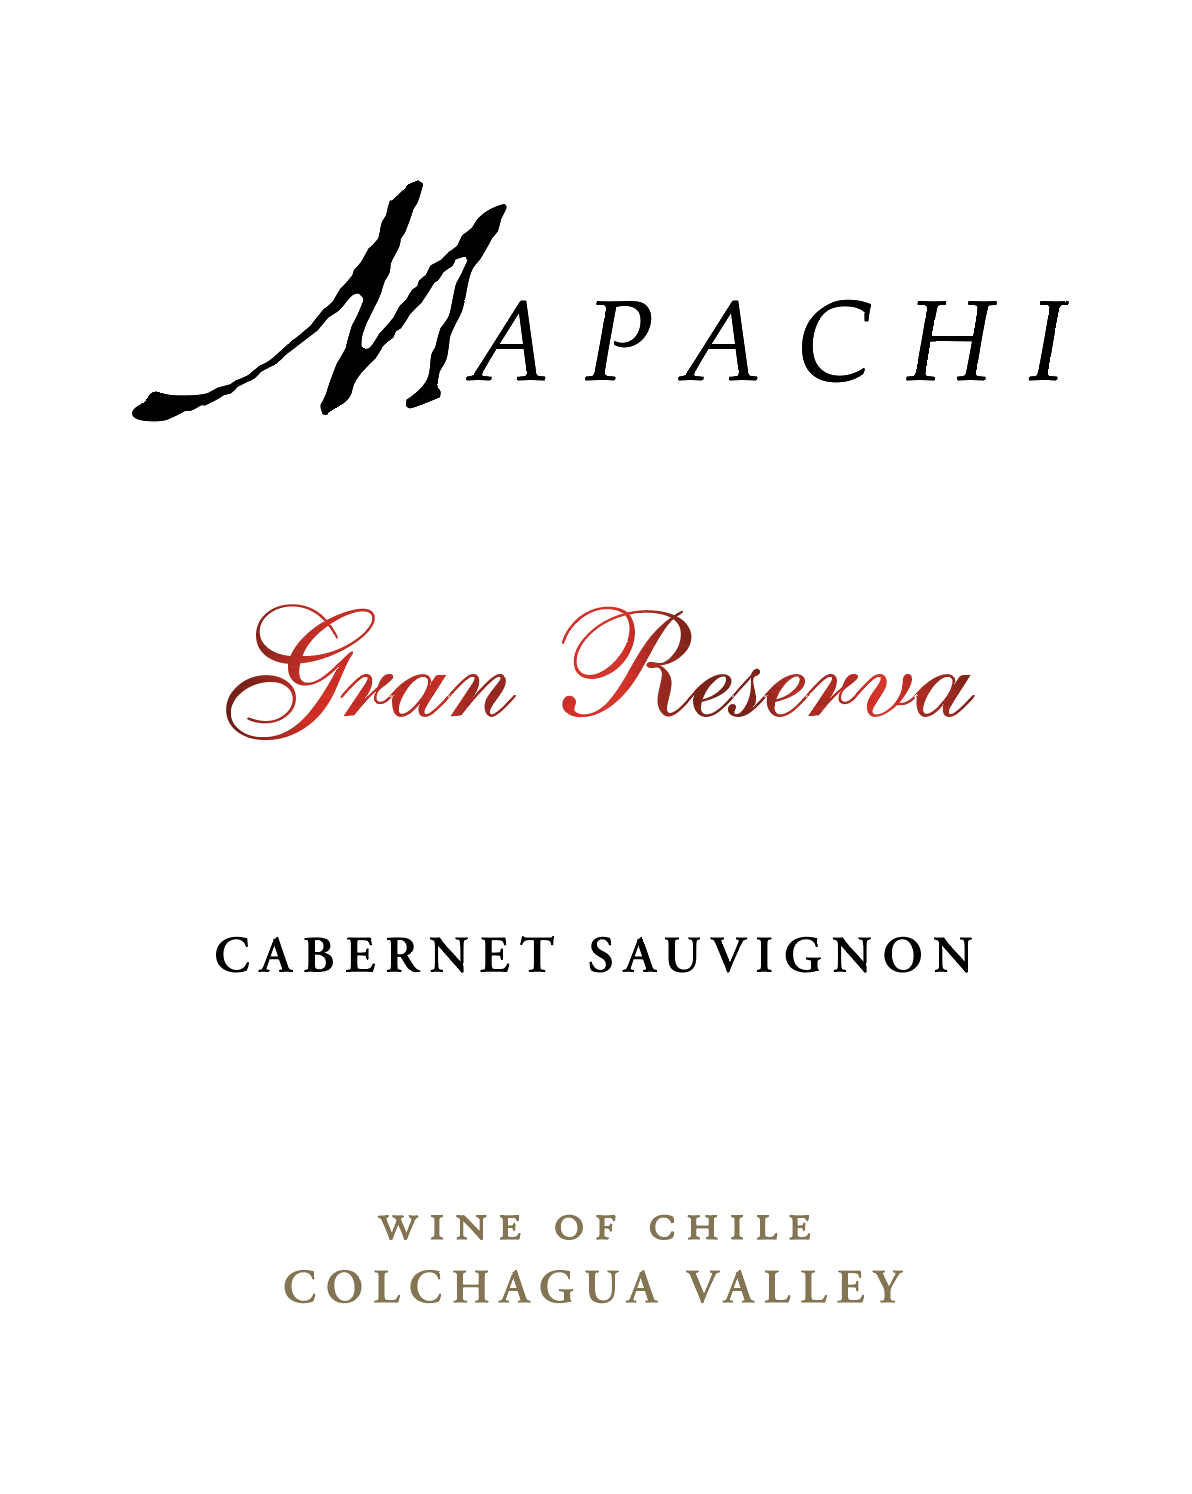 Mapachi Cabernet Sauvignon Gran Reserva  2019